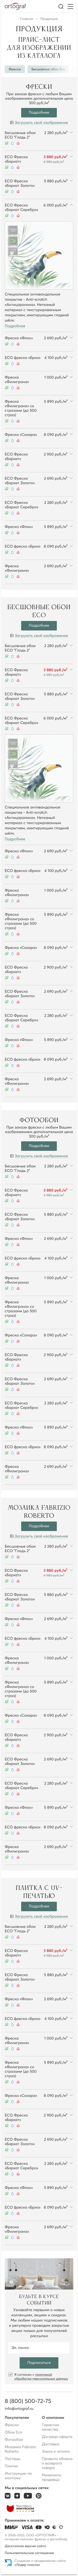 Страница цен сайта ortograf.ru для мобильных